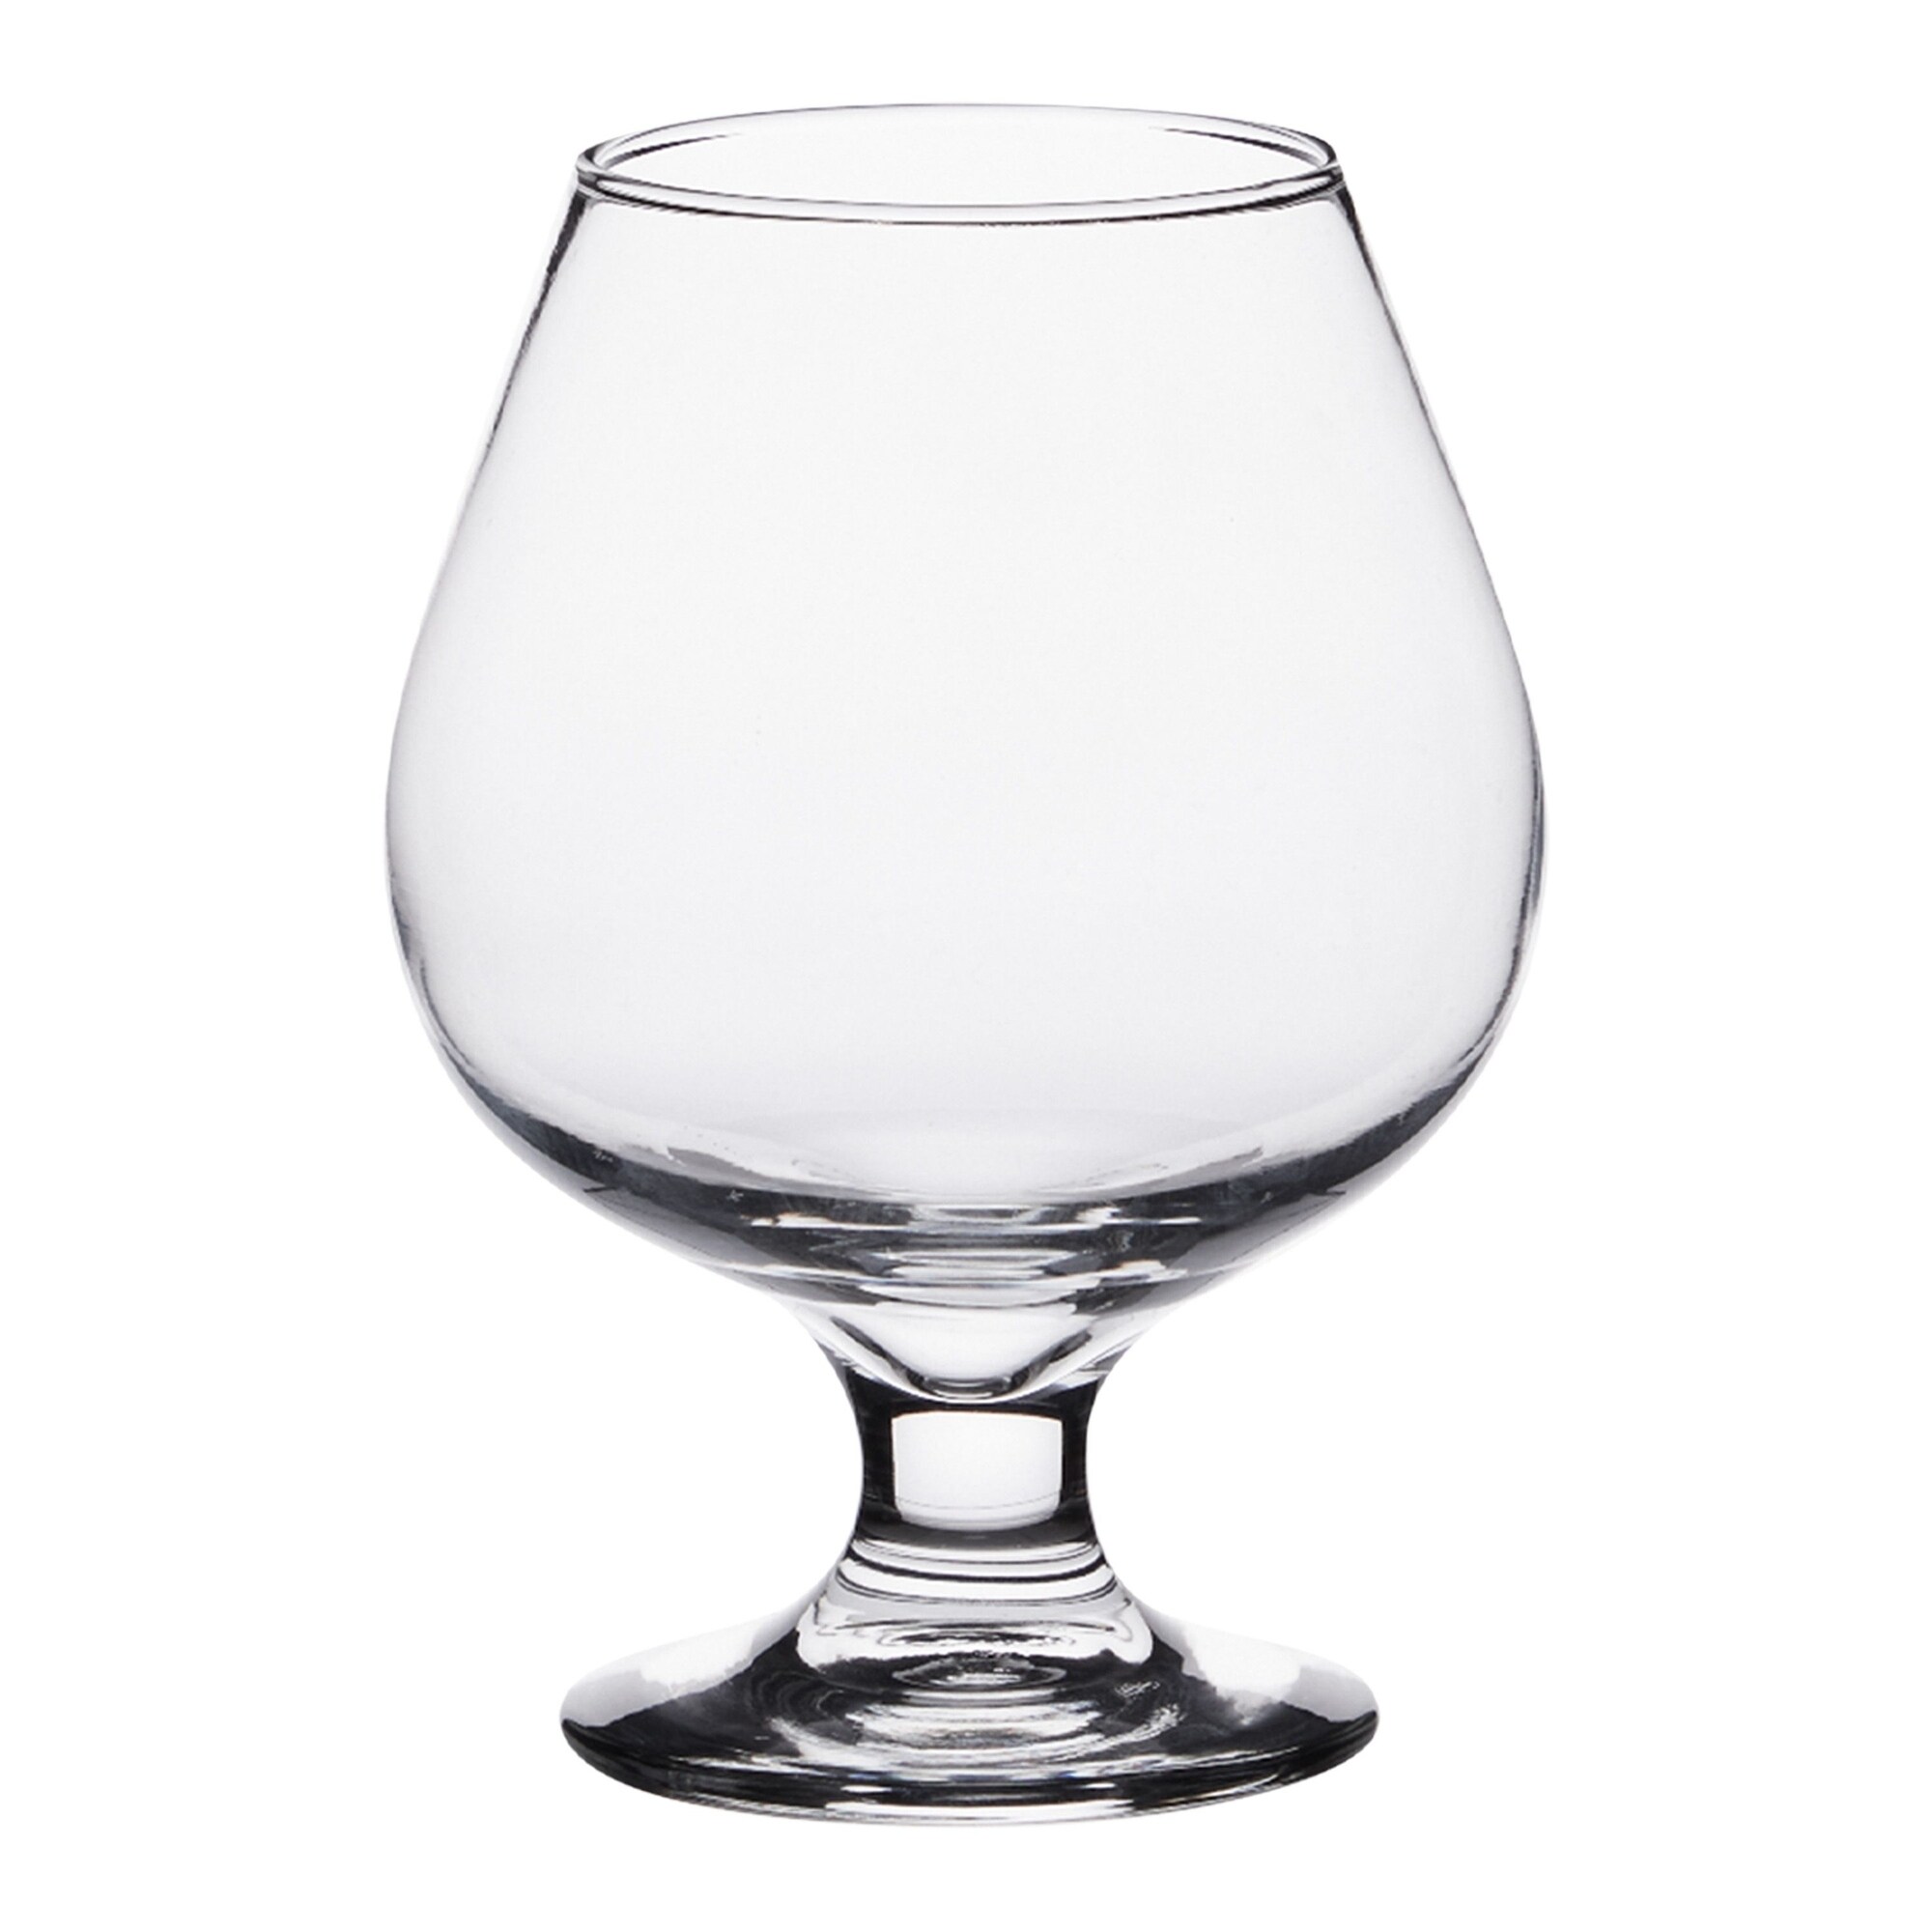 Juvale Stemmed Wine Glasses, Set of 4 for Housewarming Gift, Anniversary,  Wedding (4.5 oz)